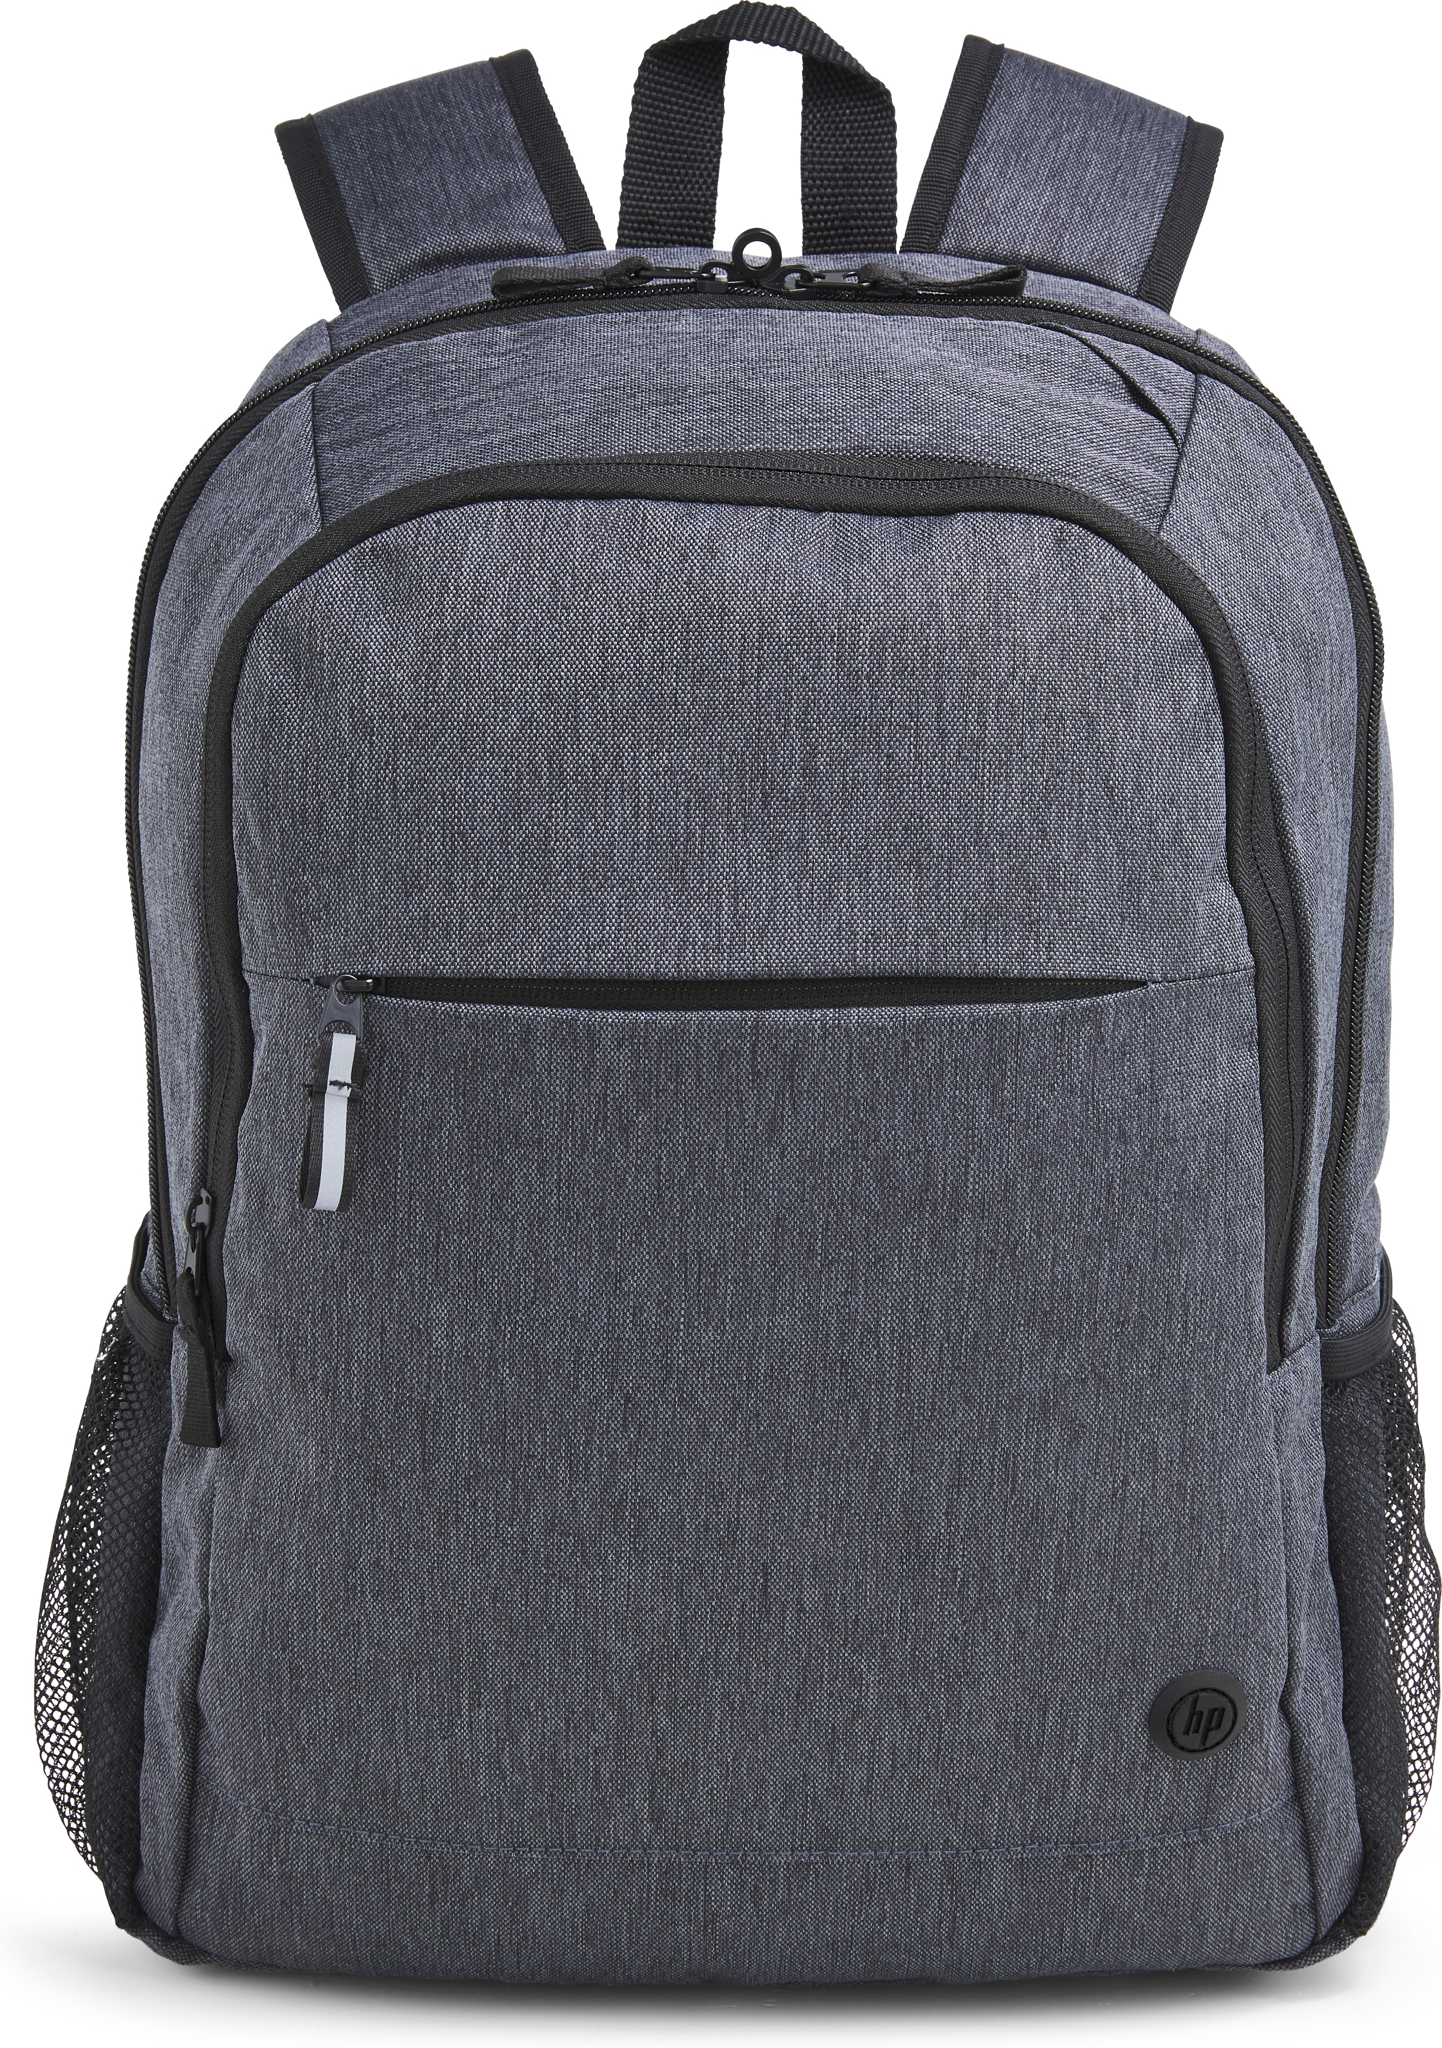 Bild von HP Prelude Pro 15.6-inch Backpack, Rucksack, 39,6 cm (15.6"), 480 g